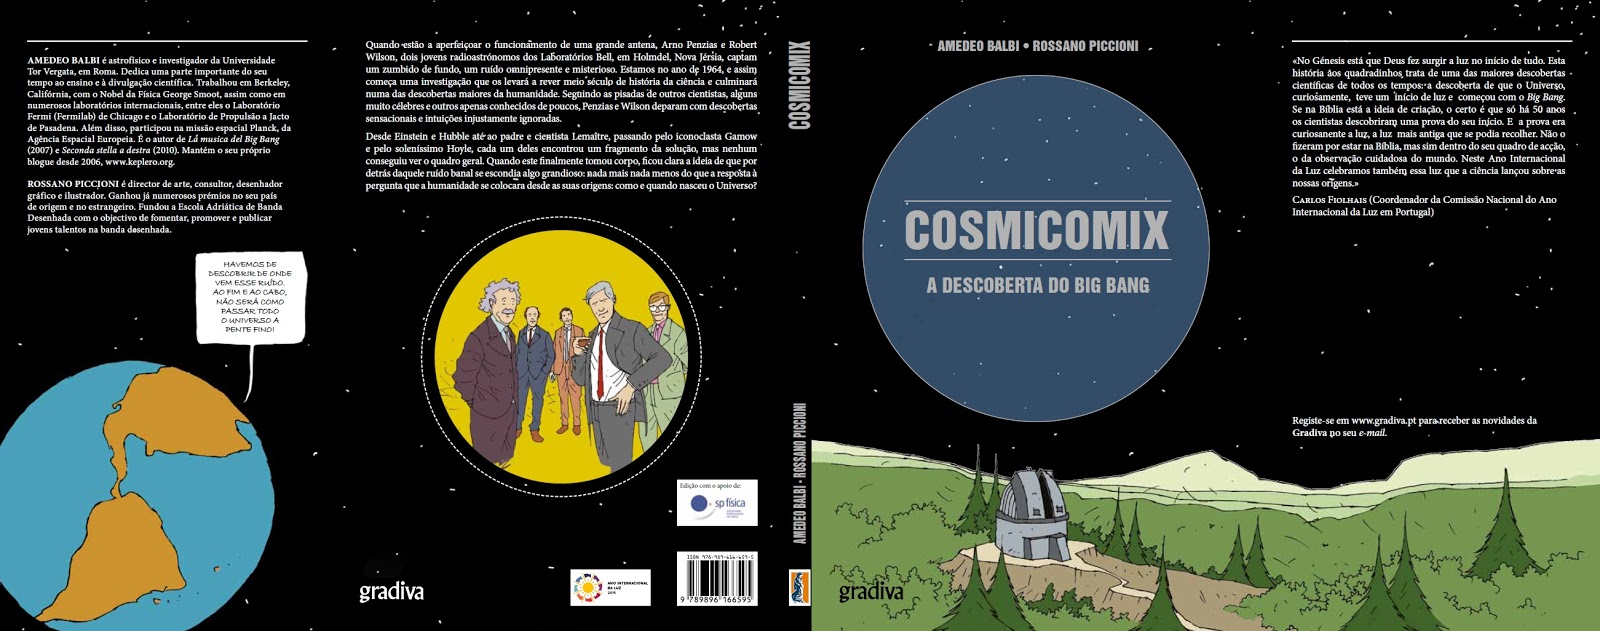 “Cosmicomix” ou as origens do universo em banda desenhada